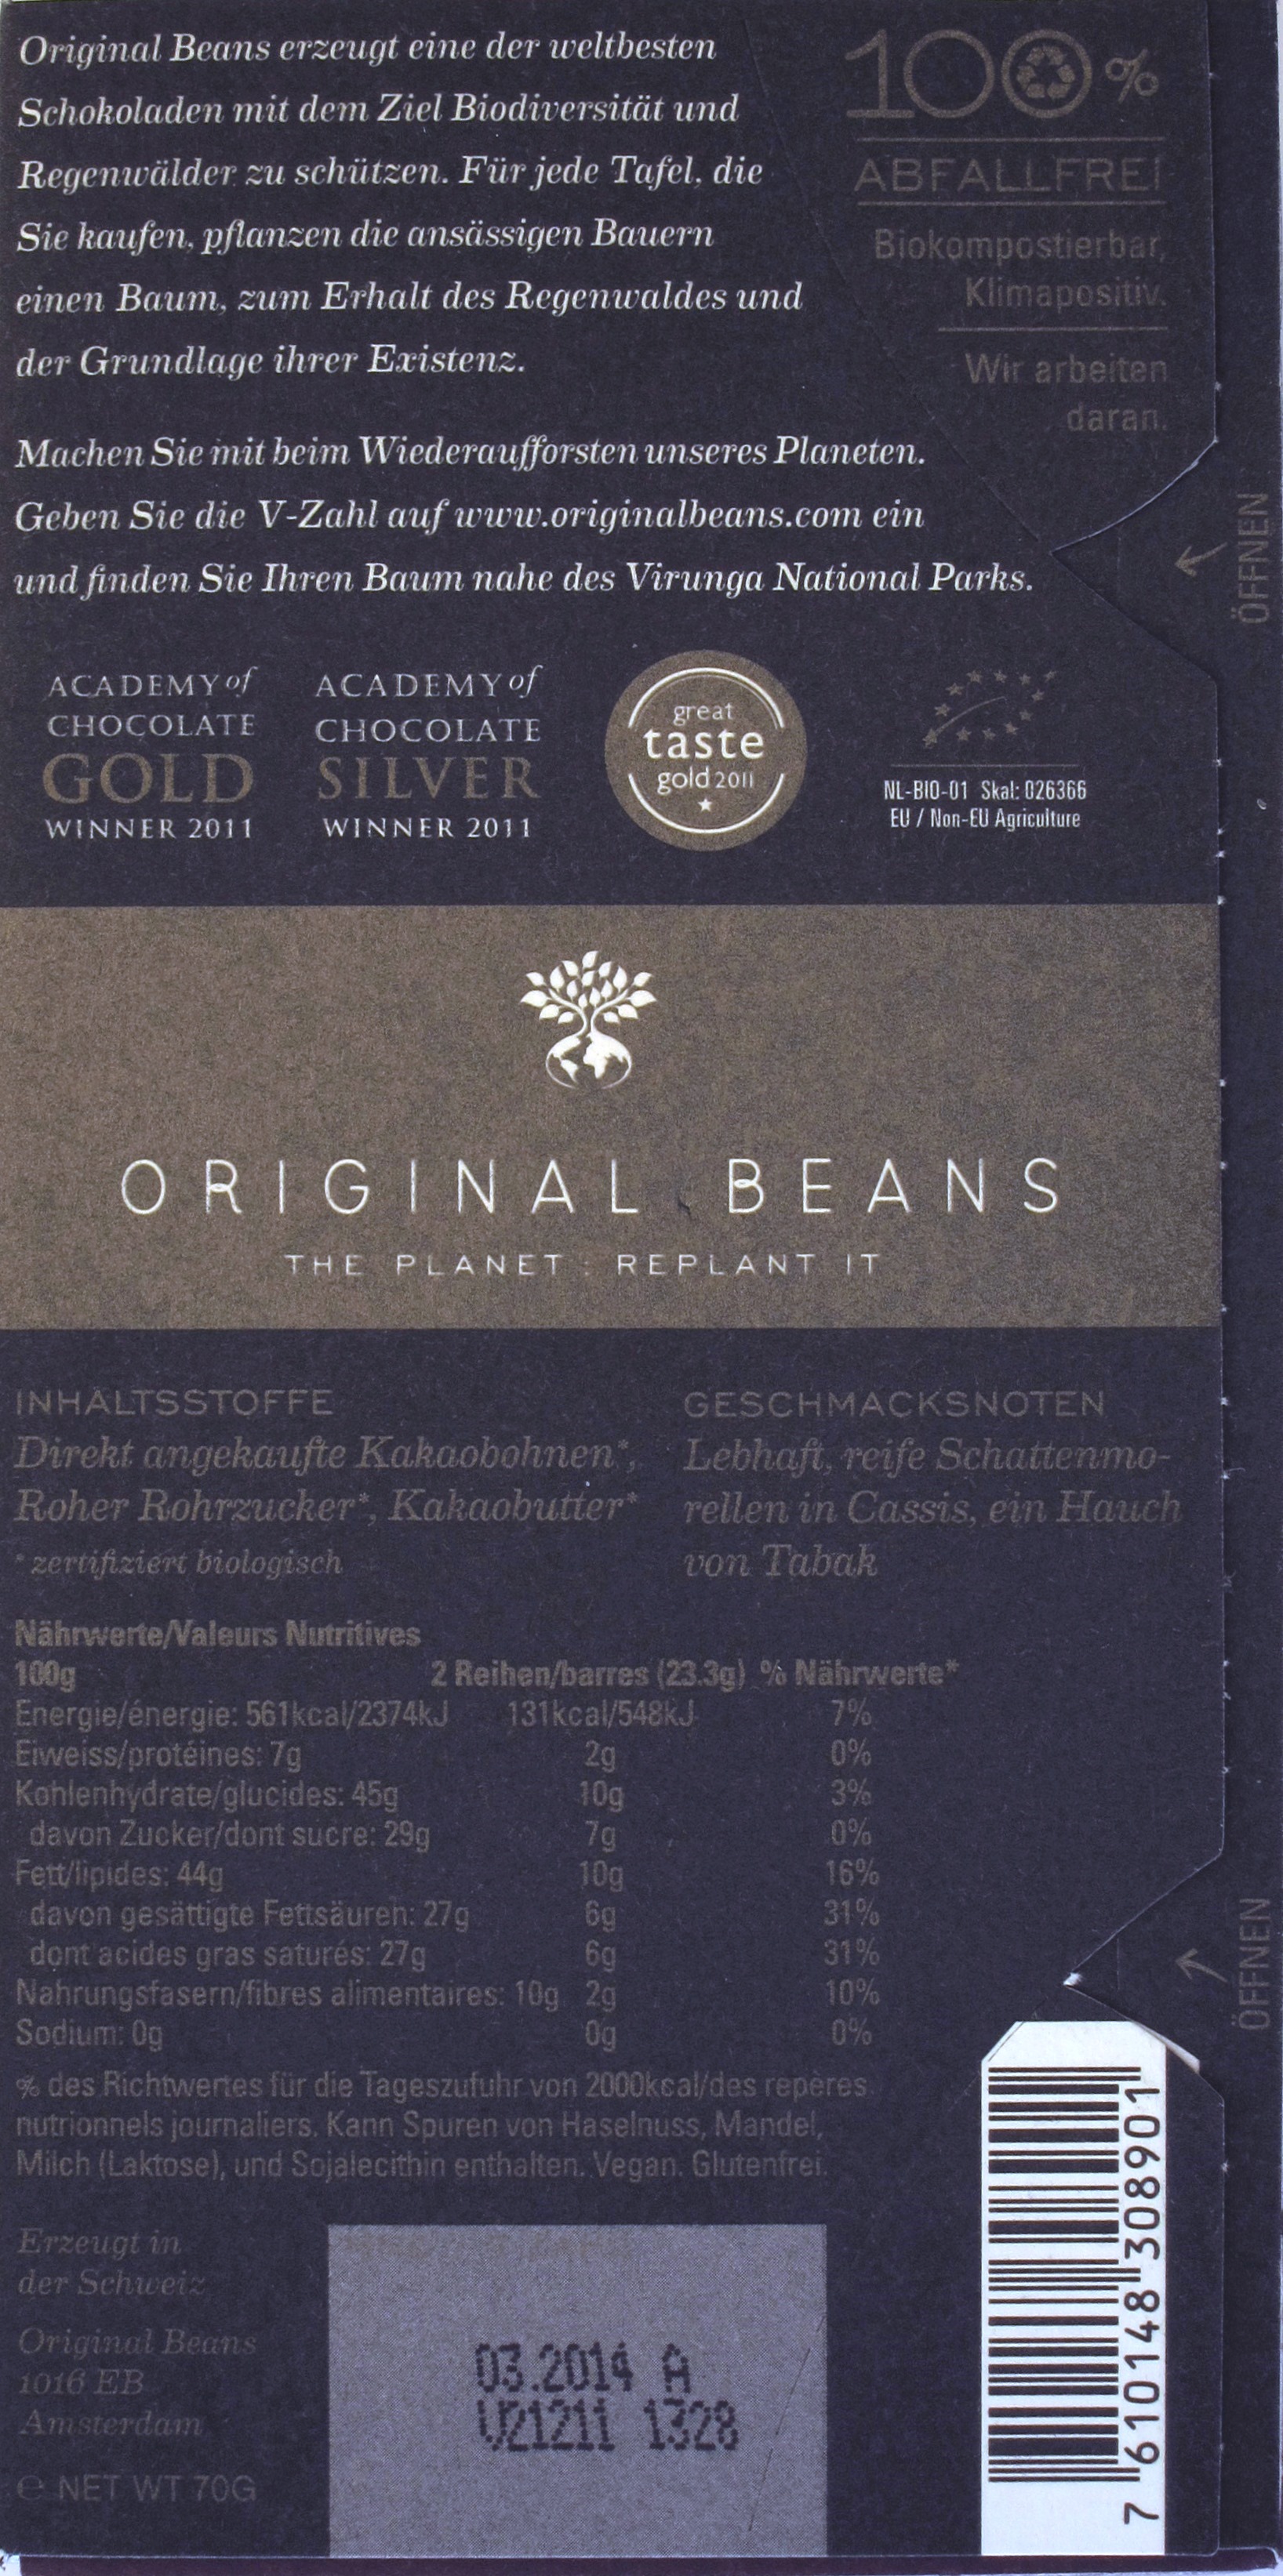 Original Beans, Cru Virunga, Bitterschokolade 70%, Rückseite